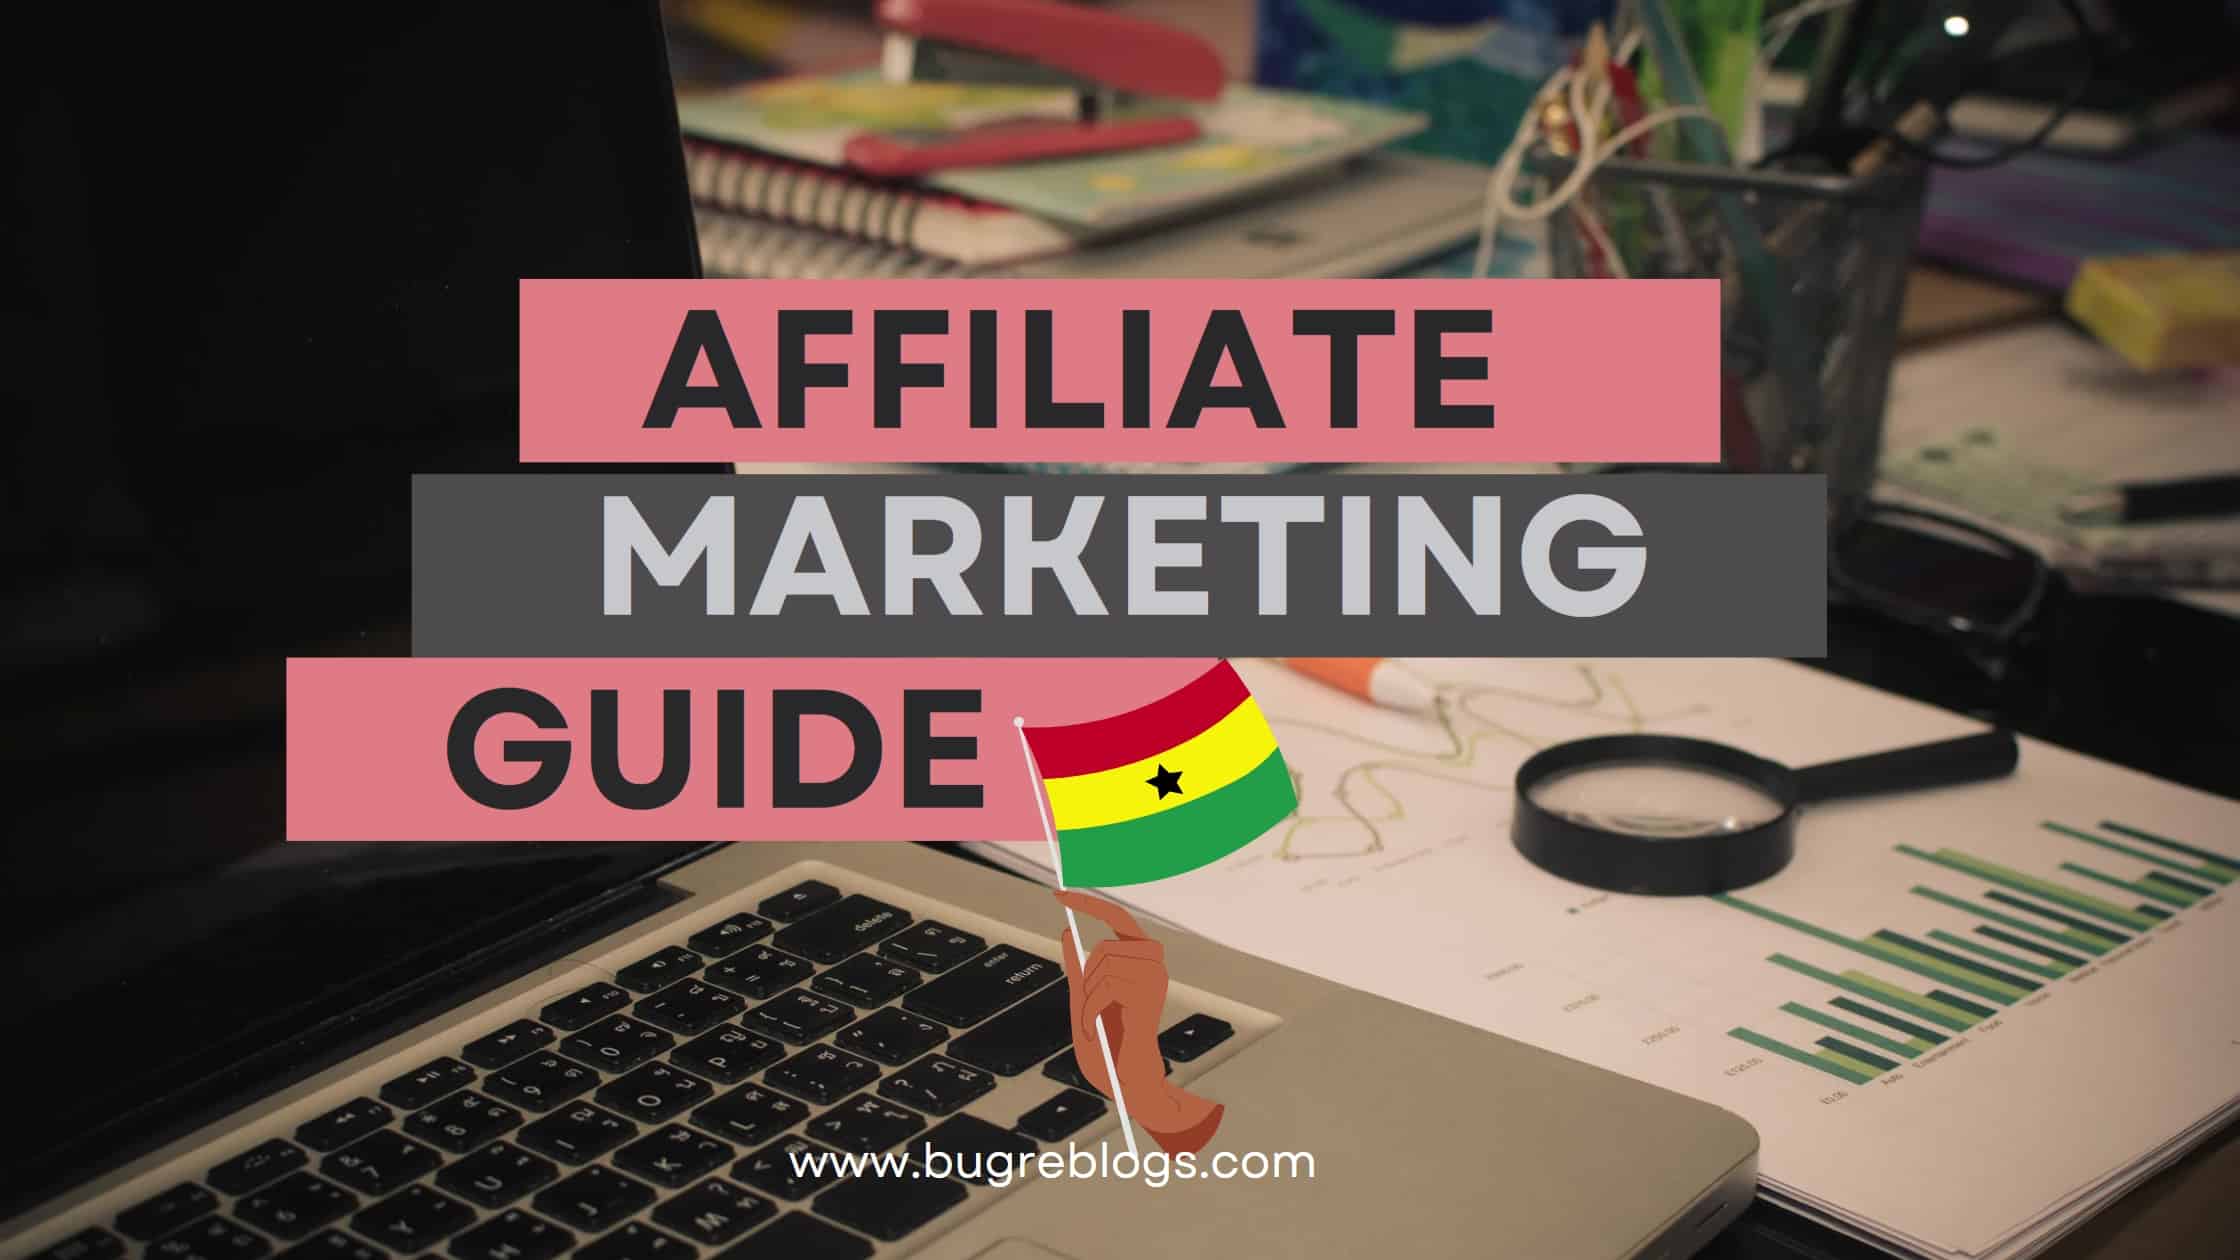 Affiliate Marketing Guide For Ghanaian Entrepreneurs - Make Money Online